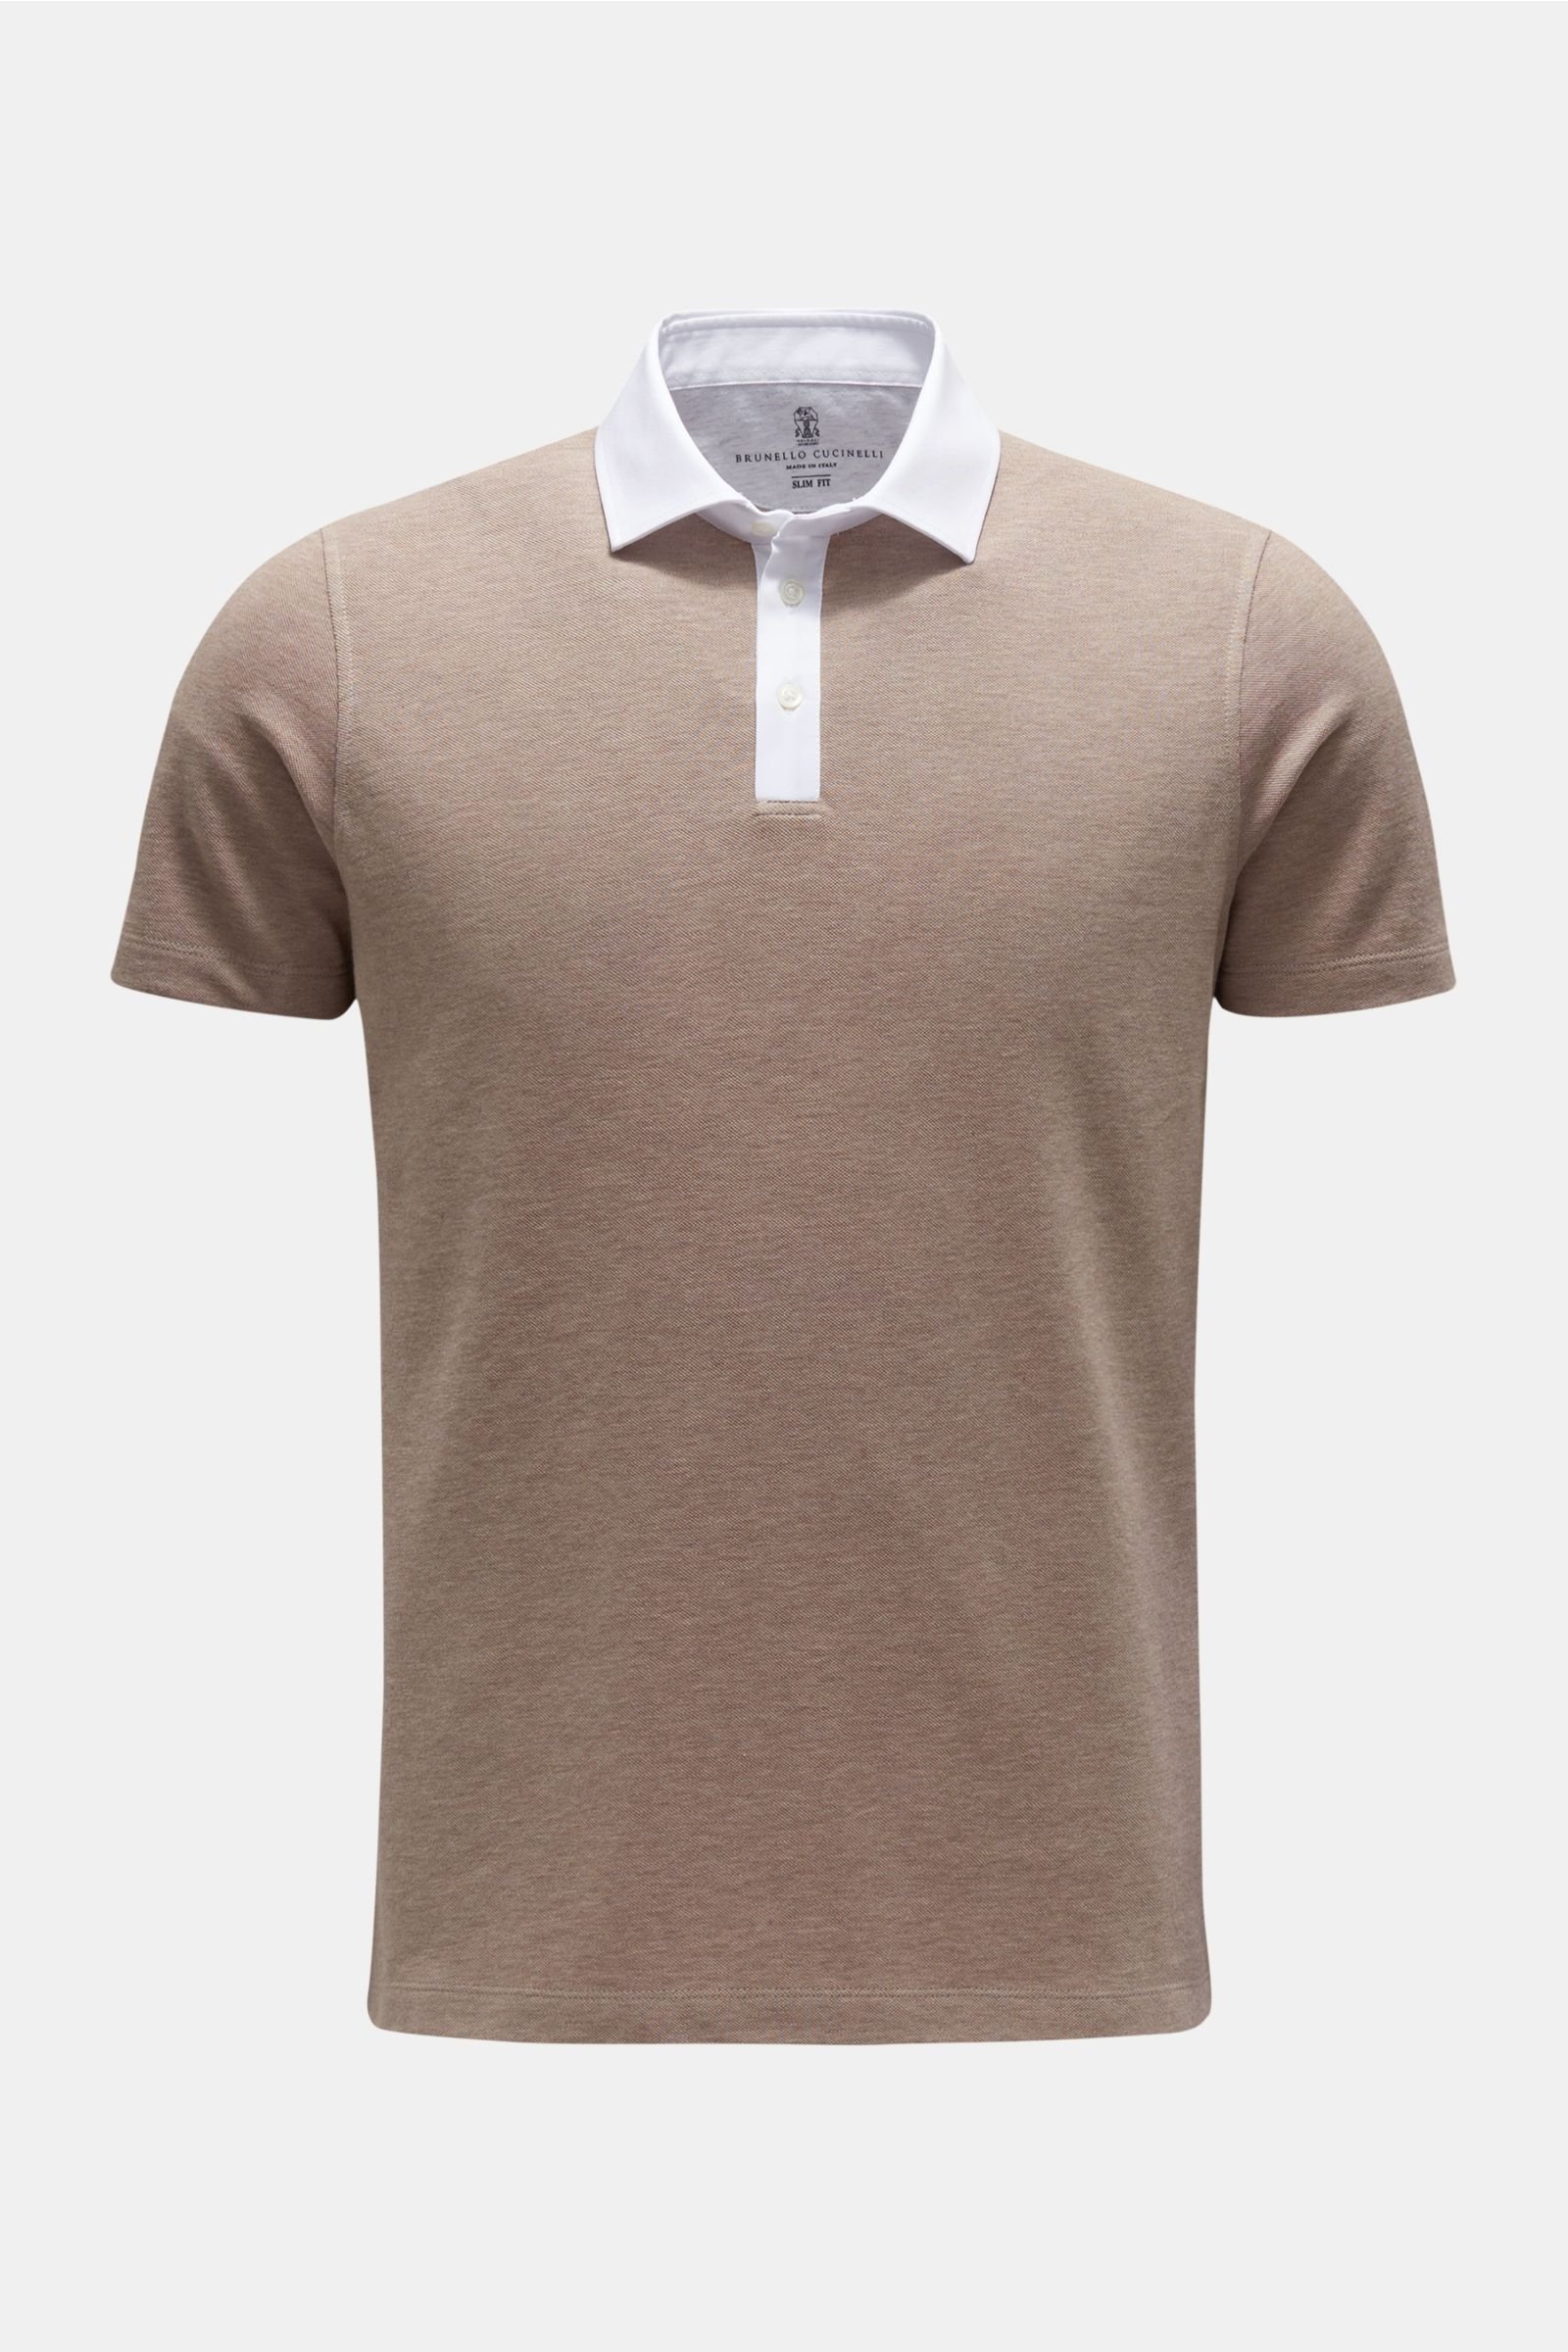 Polo shirt grey-brown